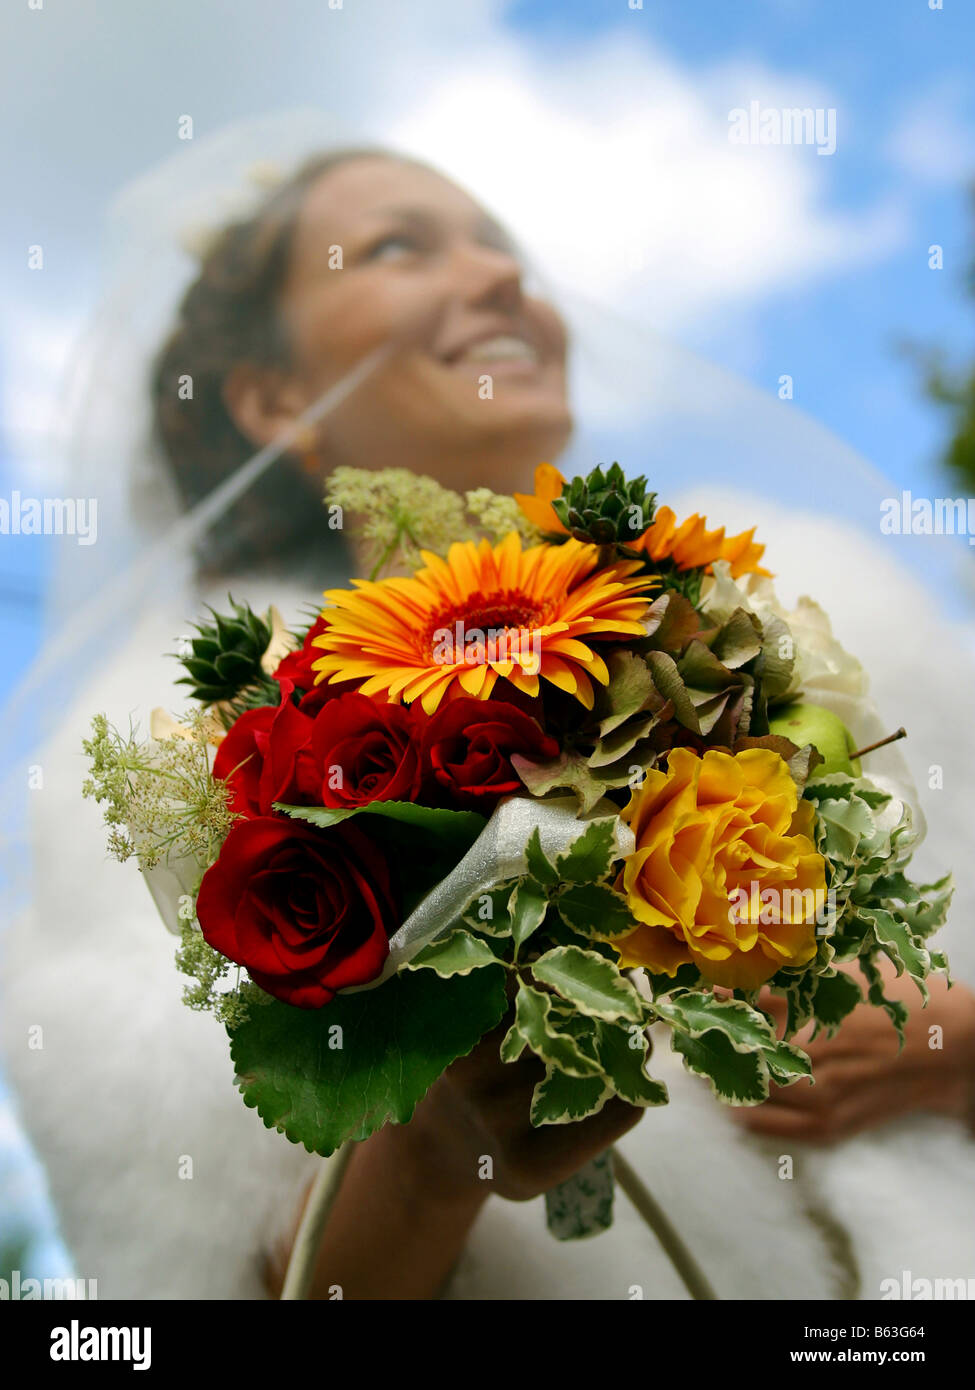 Ein Porträt einer Braut am Tag ihrer Hochzeit Bouquet Blumenstrauß Fokus festhalten abgebildet Stockfoto